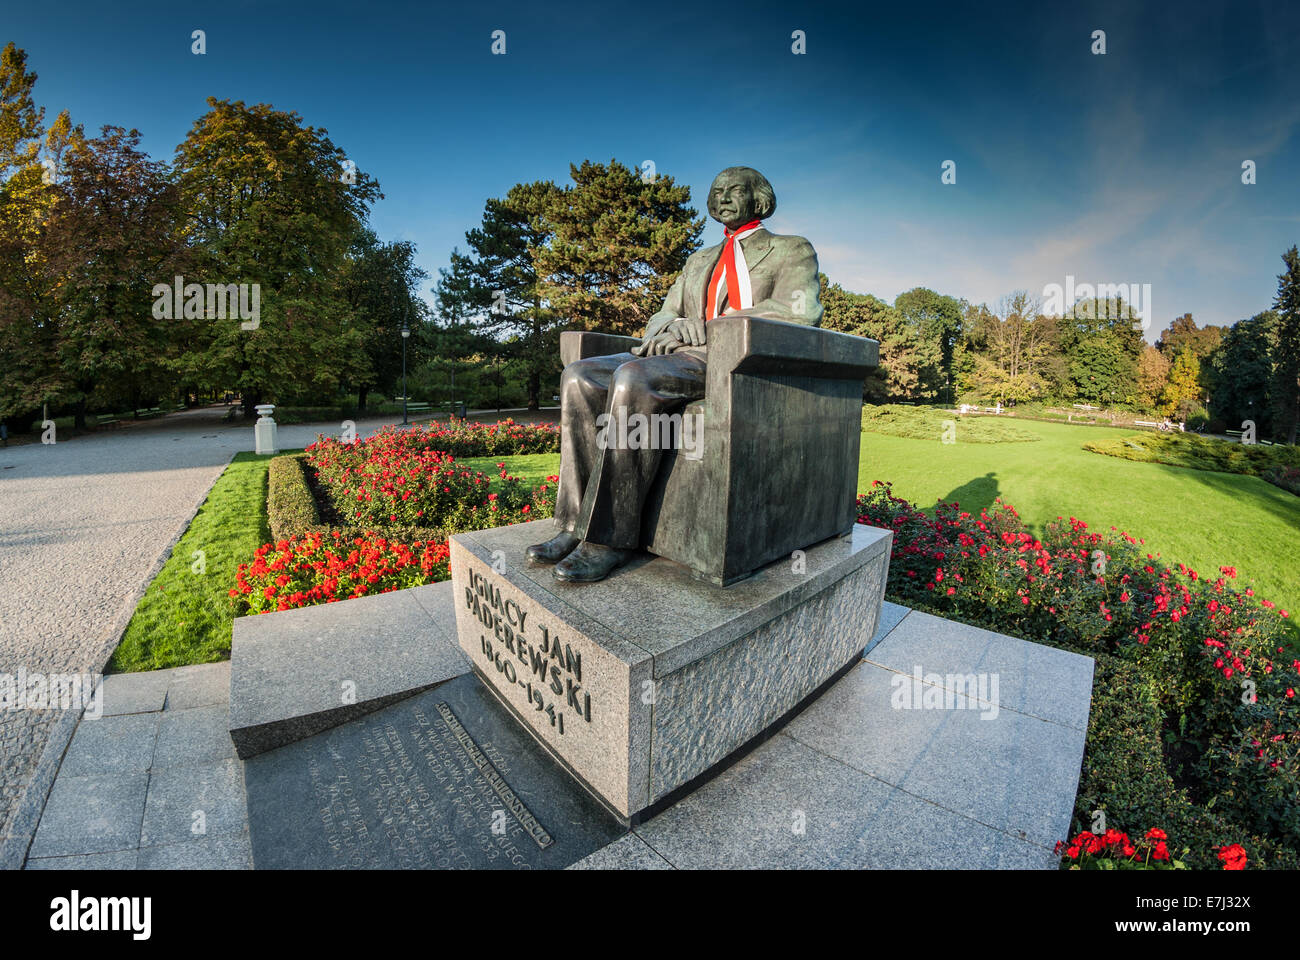 Statue Ignacy Jan Paderewski (musicien polonais et homme d'état) dans le parc Château Ujazdowski, Varsovie, Pologne Banque D'Images